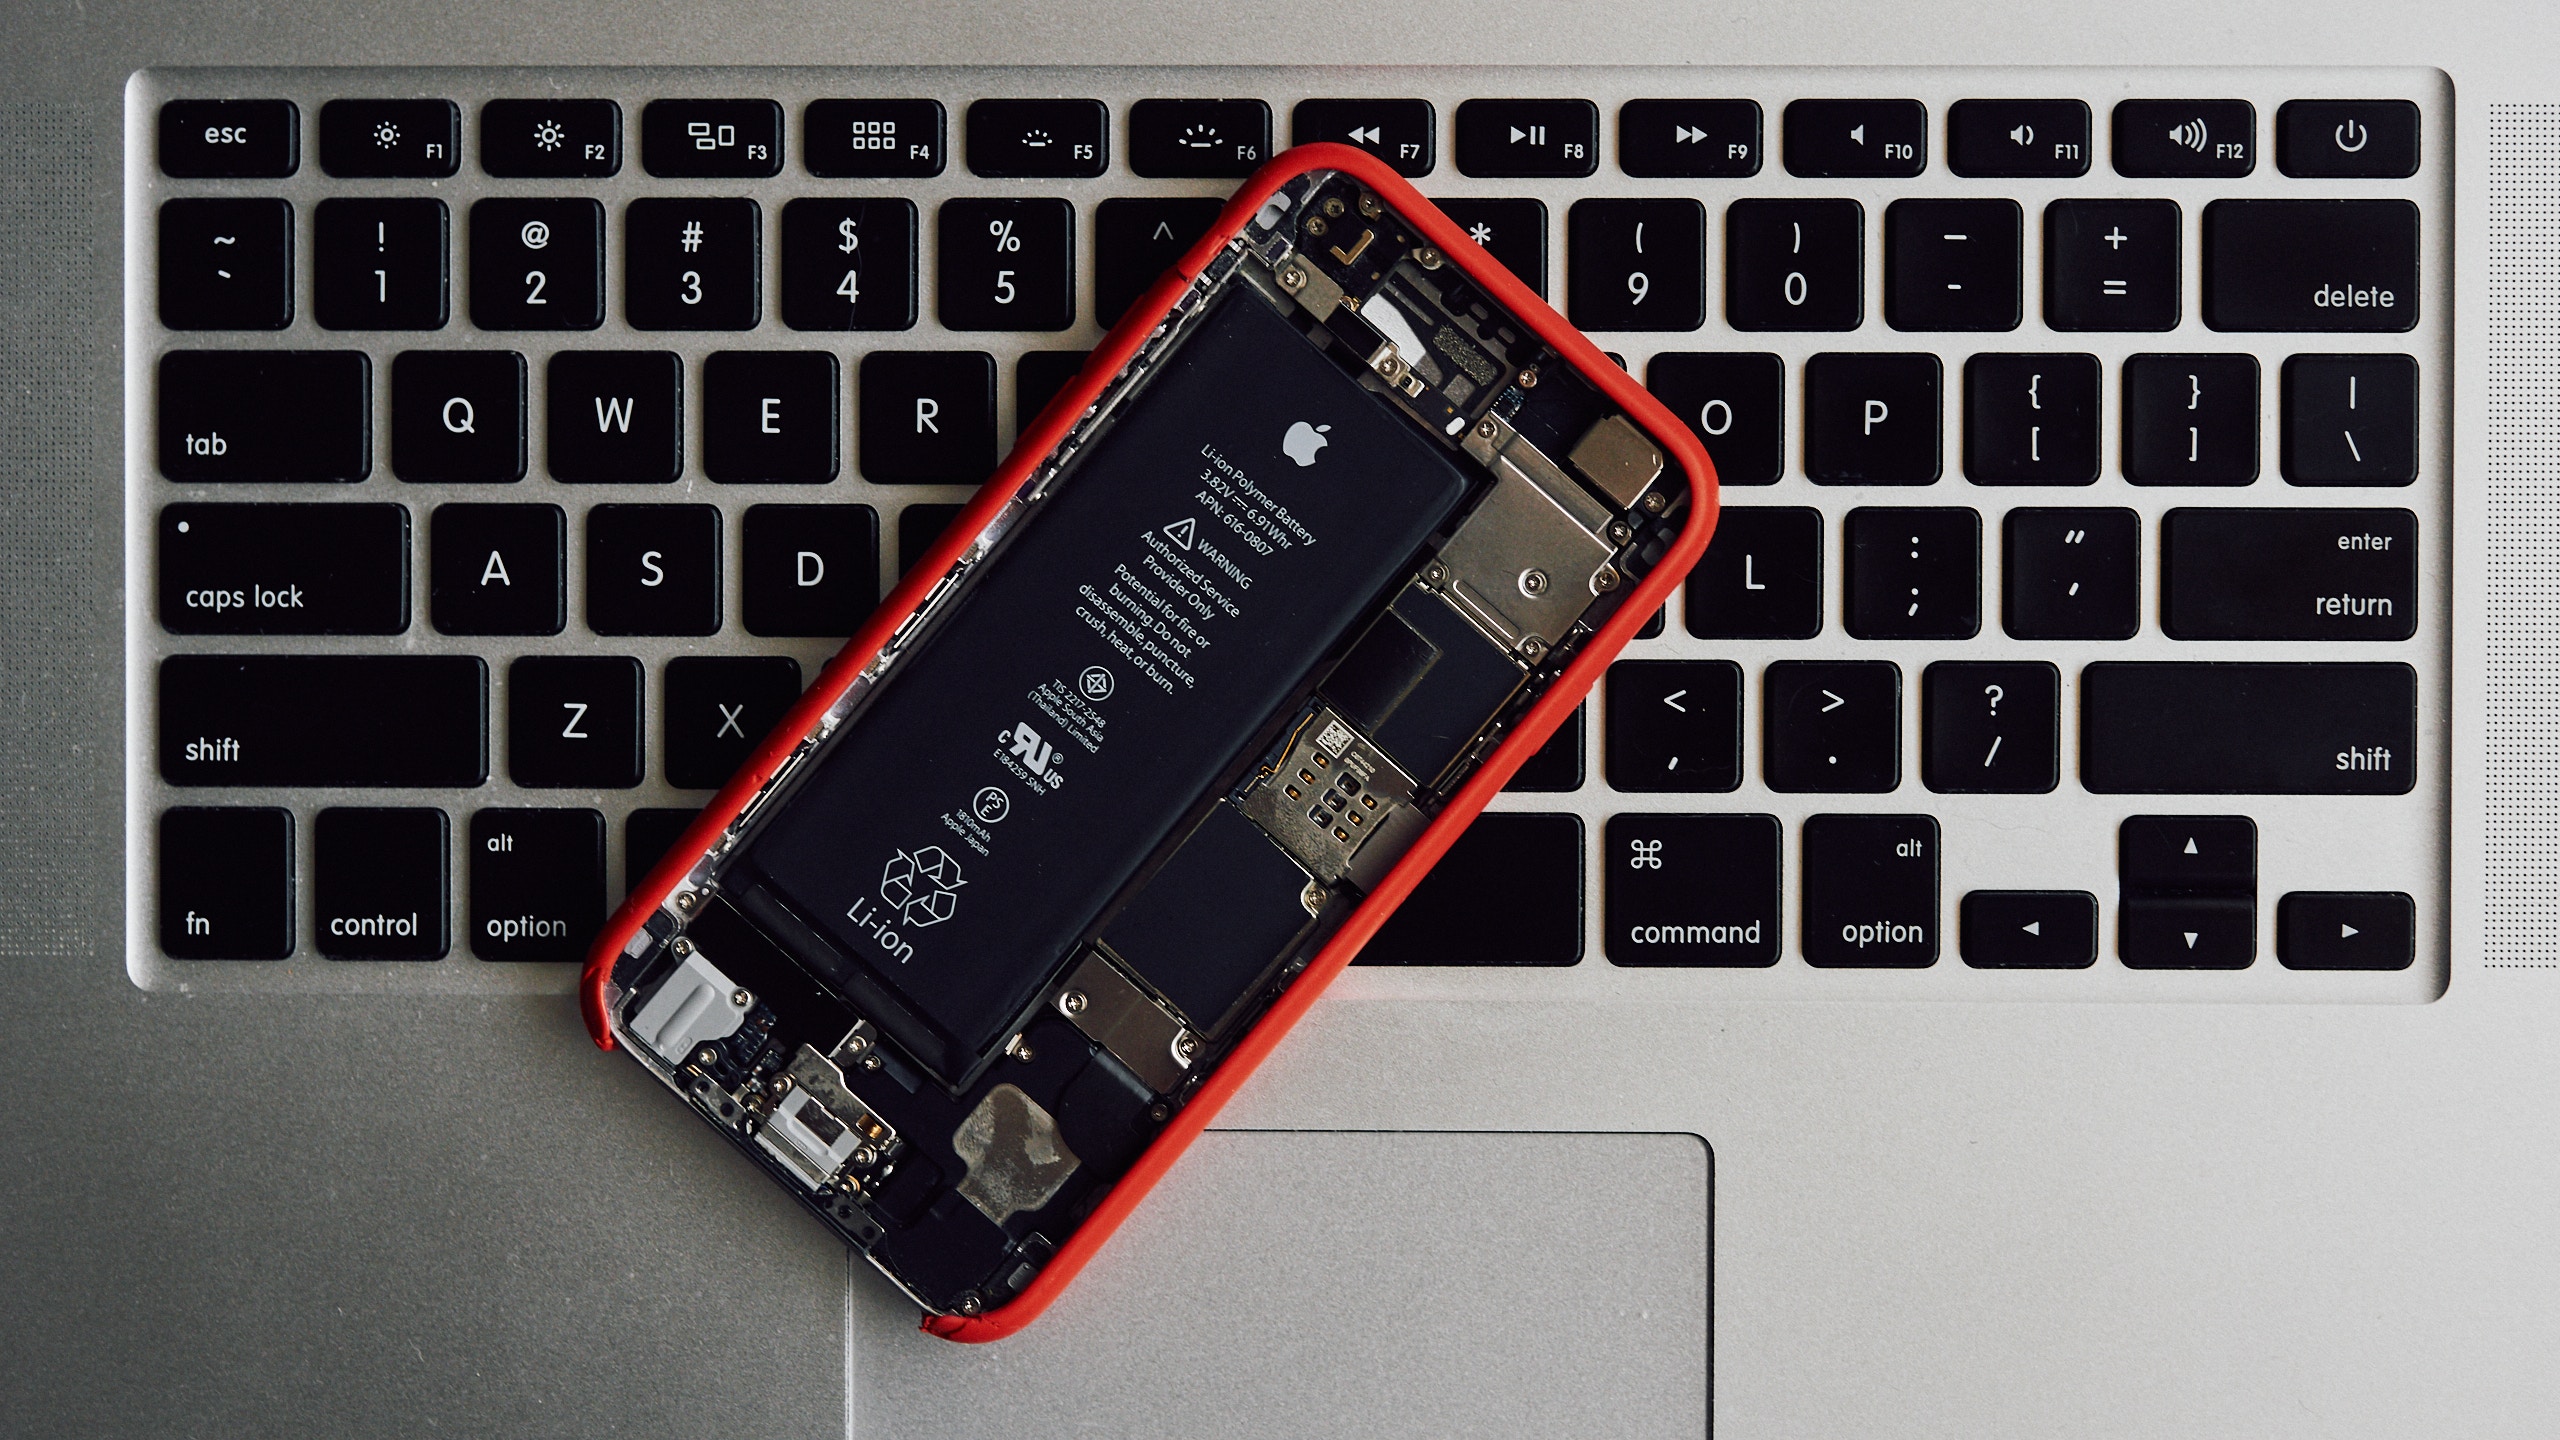 iPhone batarya zayıflama problemi ile karşı karşıya